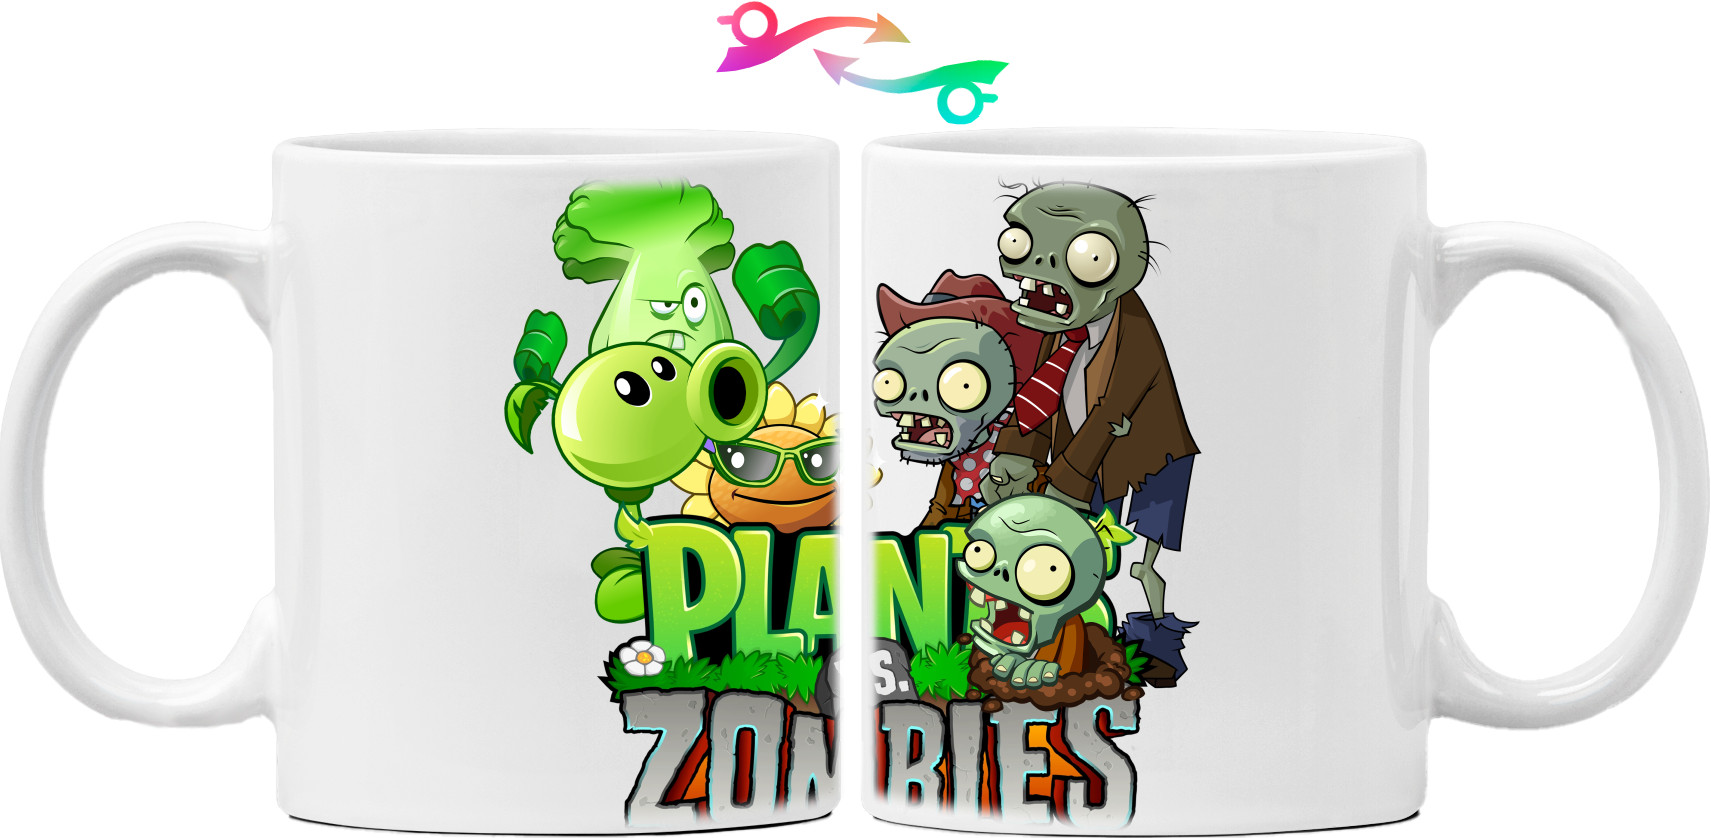 Plants vs Zombies 5